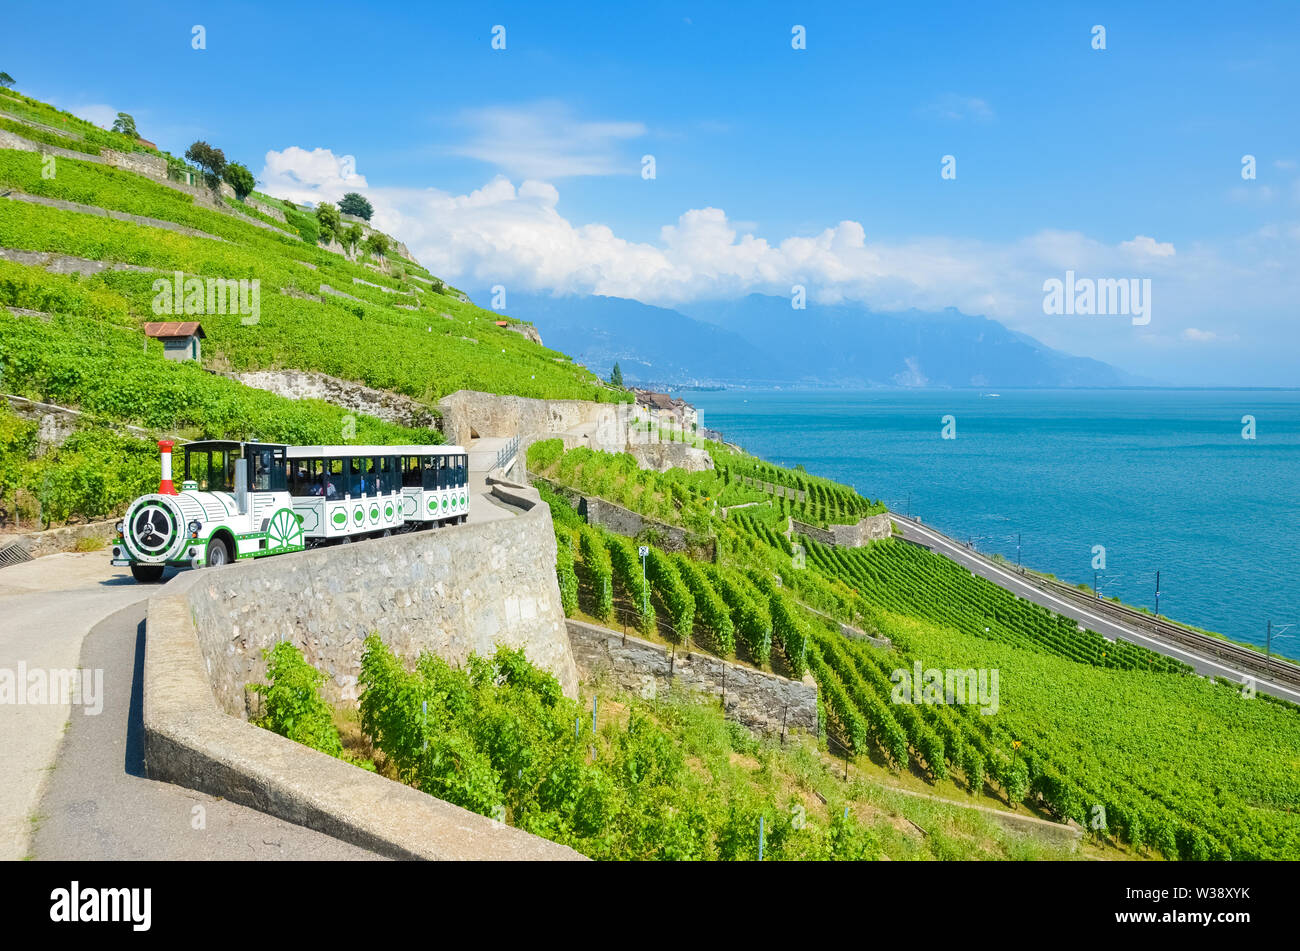 Train touristique auprès des touristes en voiture sur vignobles en terrasses par le lac de Genève, Suisse. Lac Léman Suisse est une destination de vacances populaire et attraction touristique. De beaux paysages. Nature extraordinaire. Banque D'Images